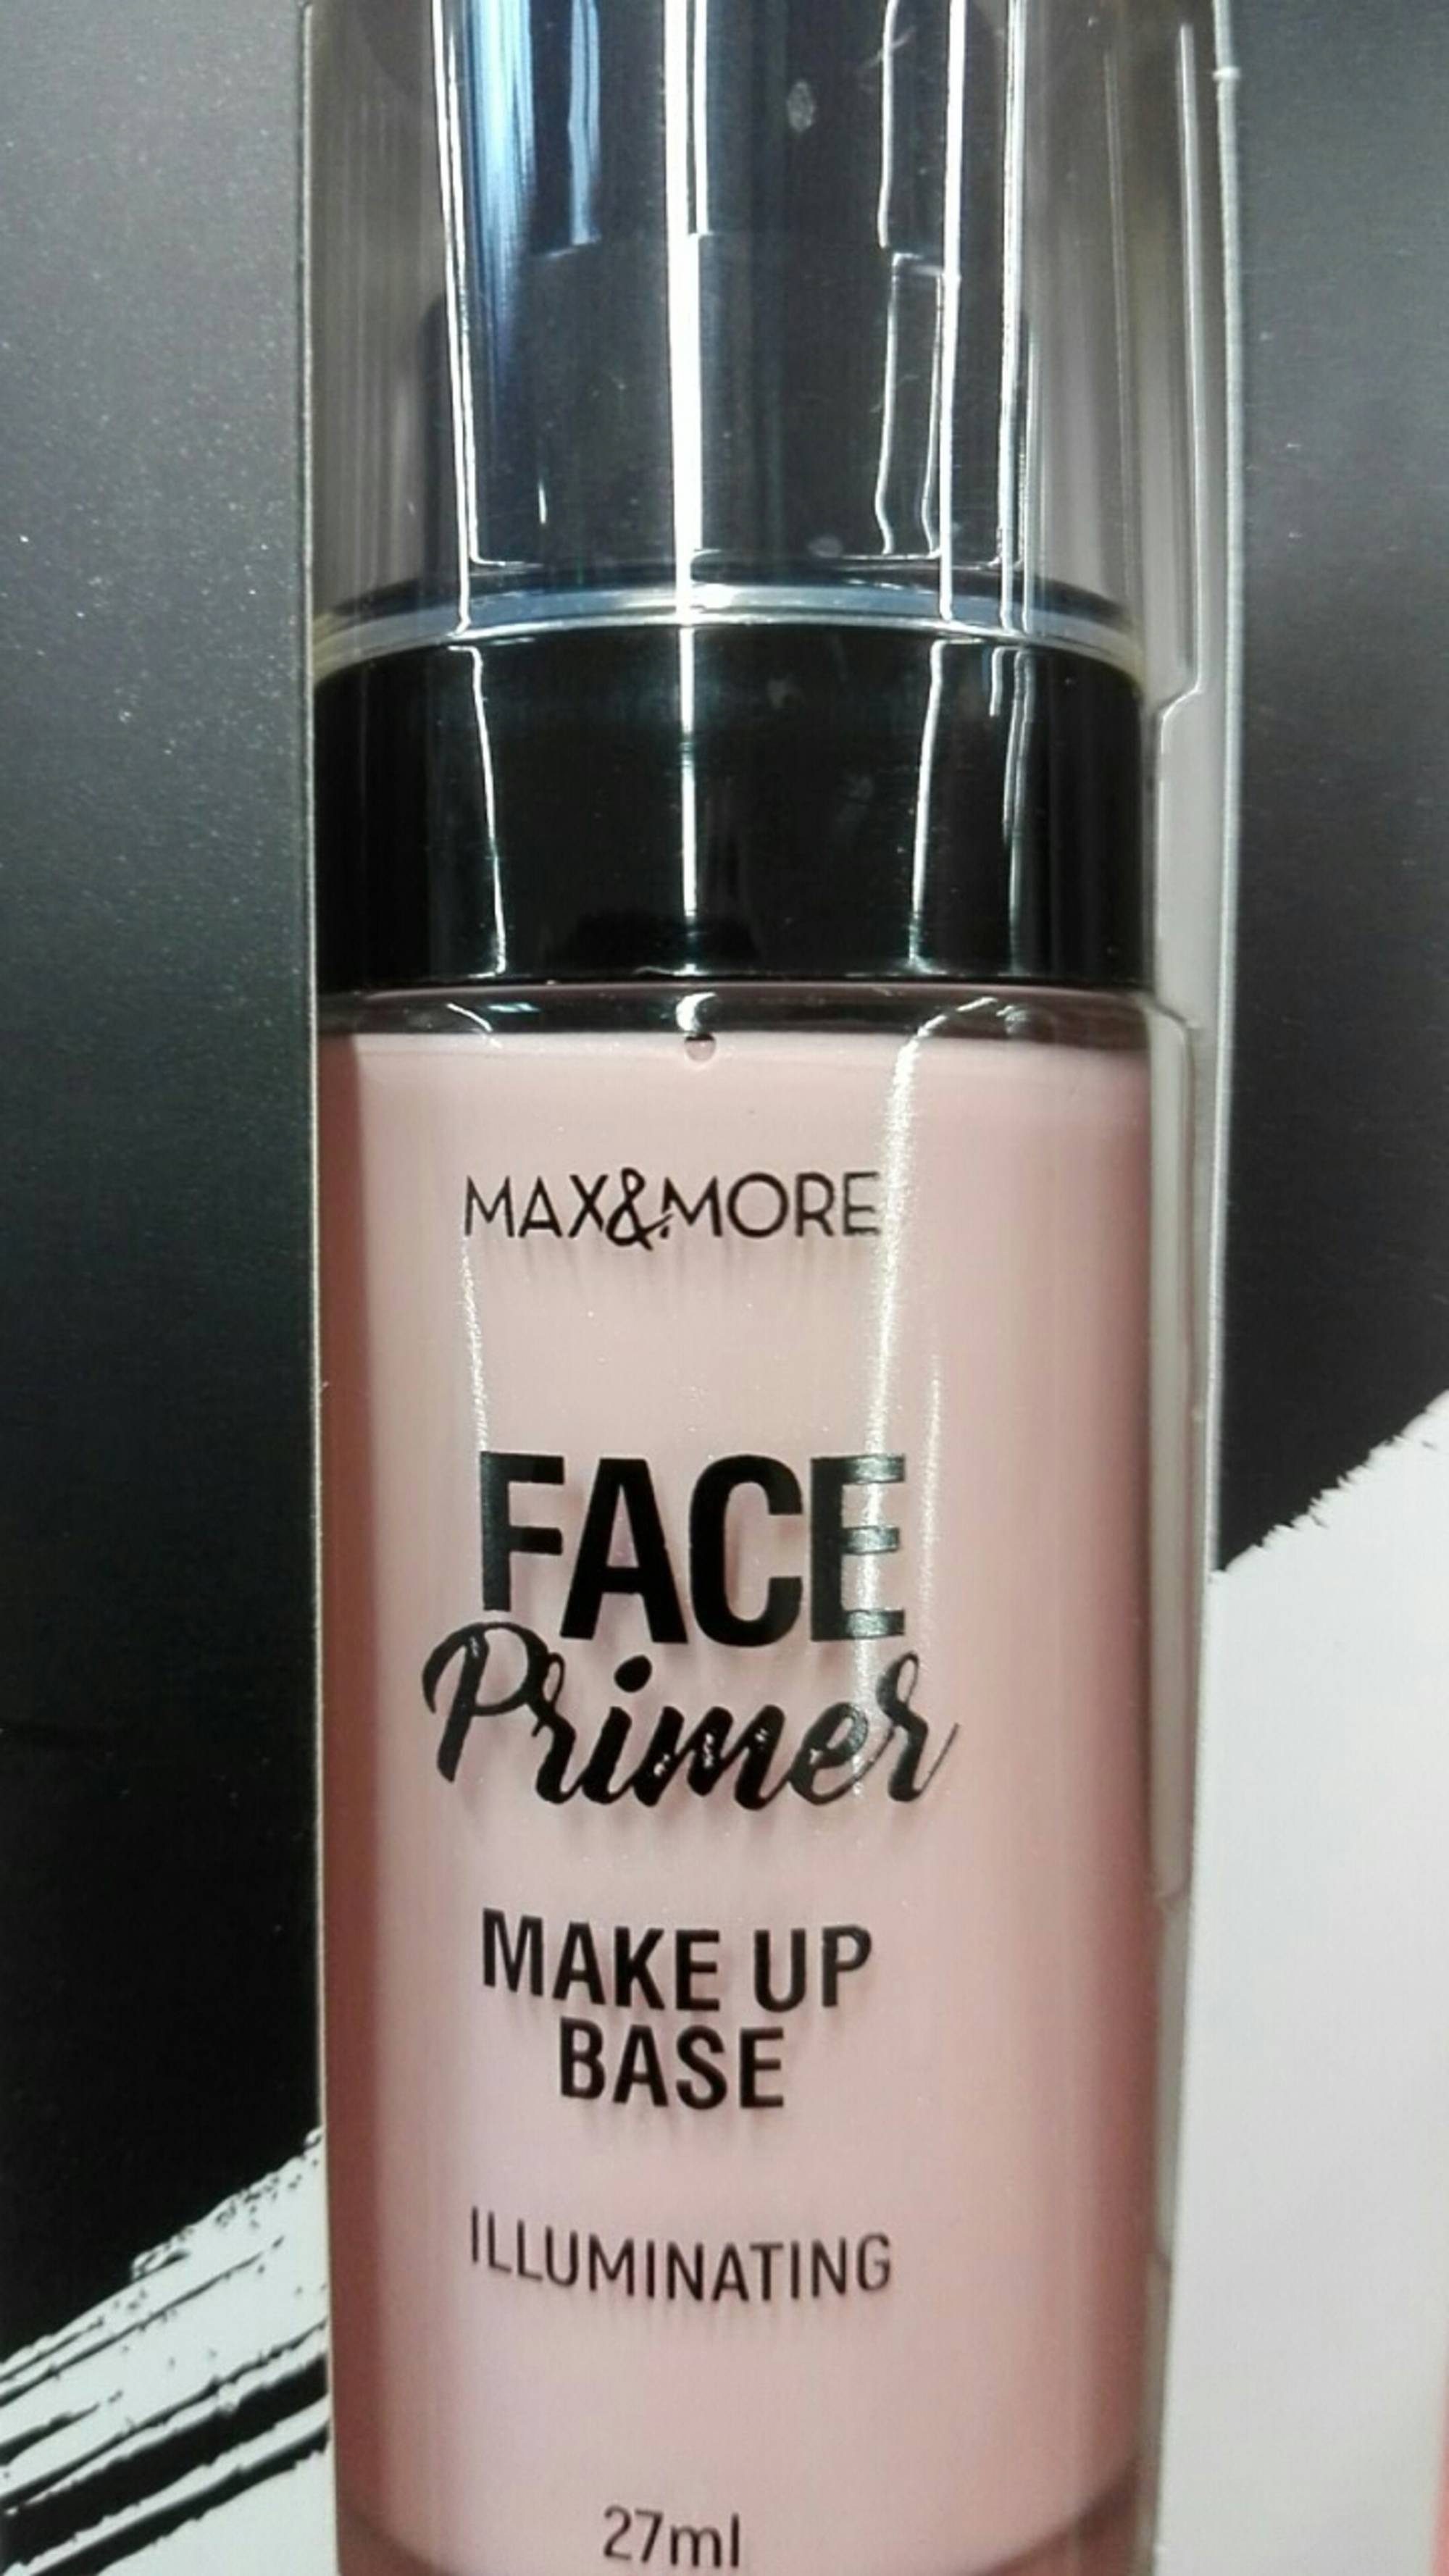 MAX & MORE - Face primer - Make up base illuminating